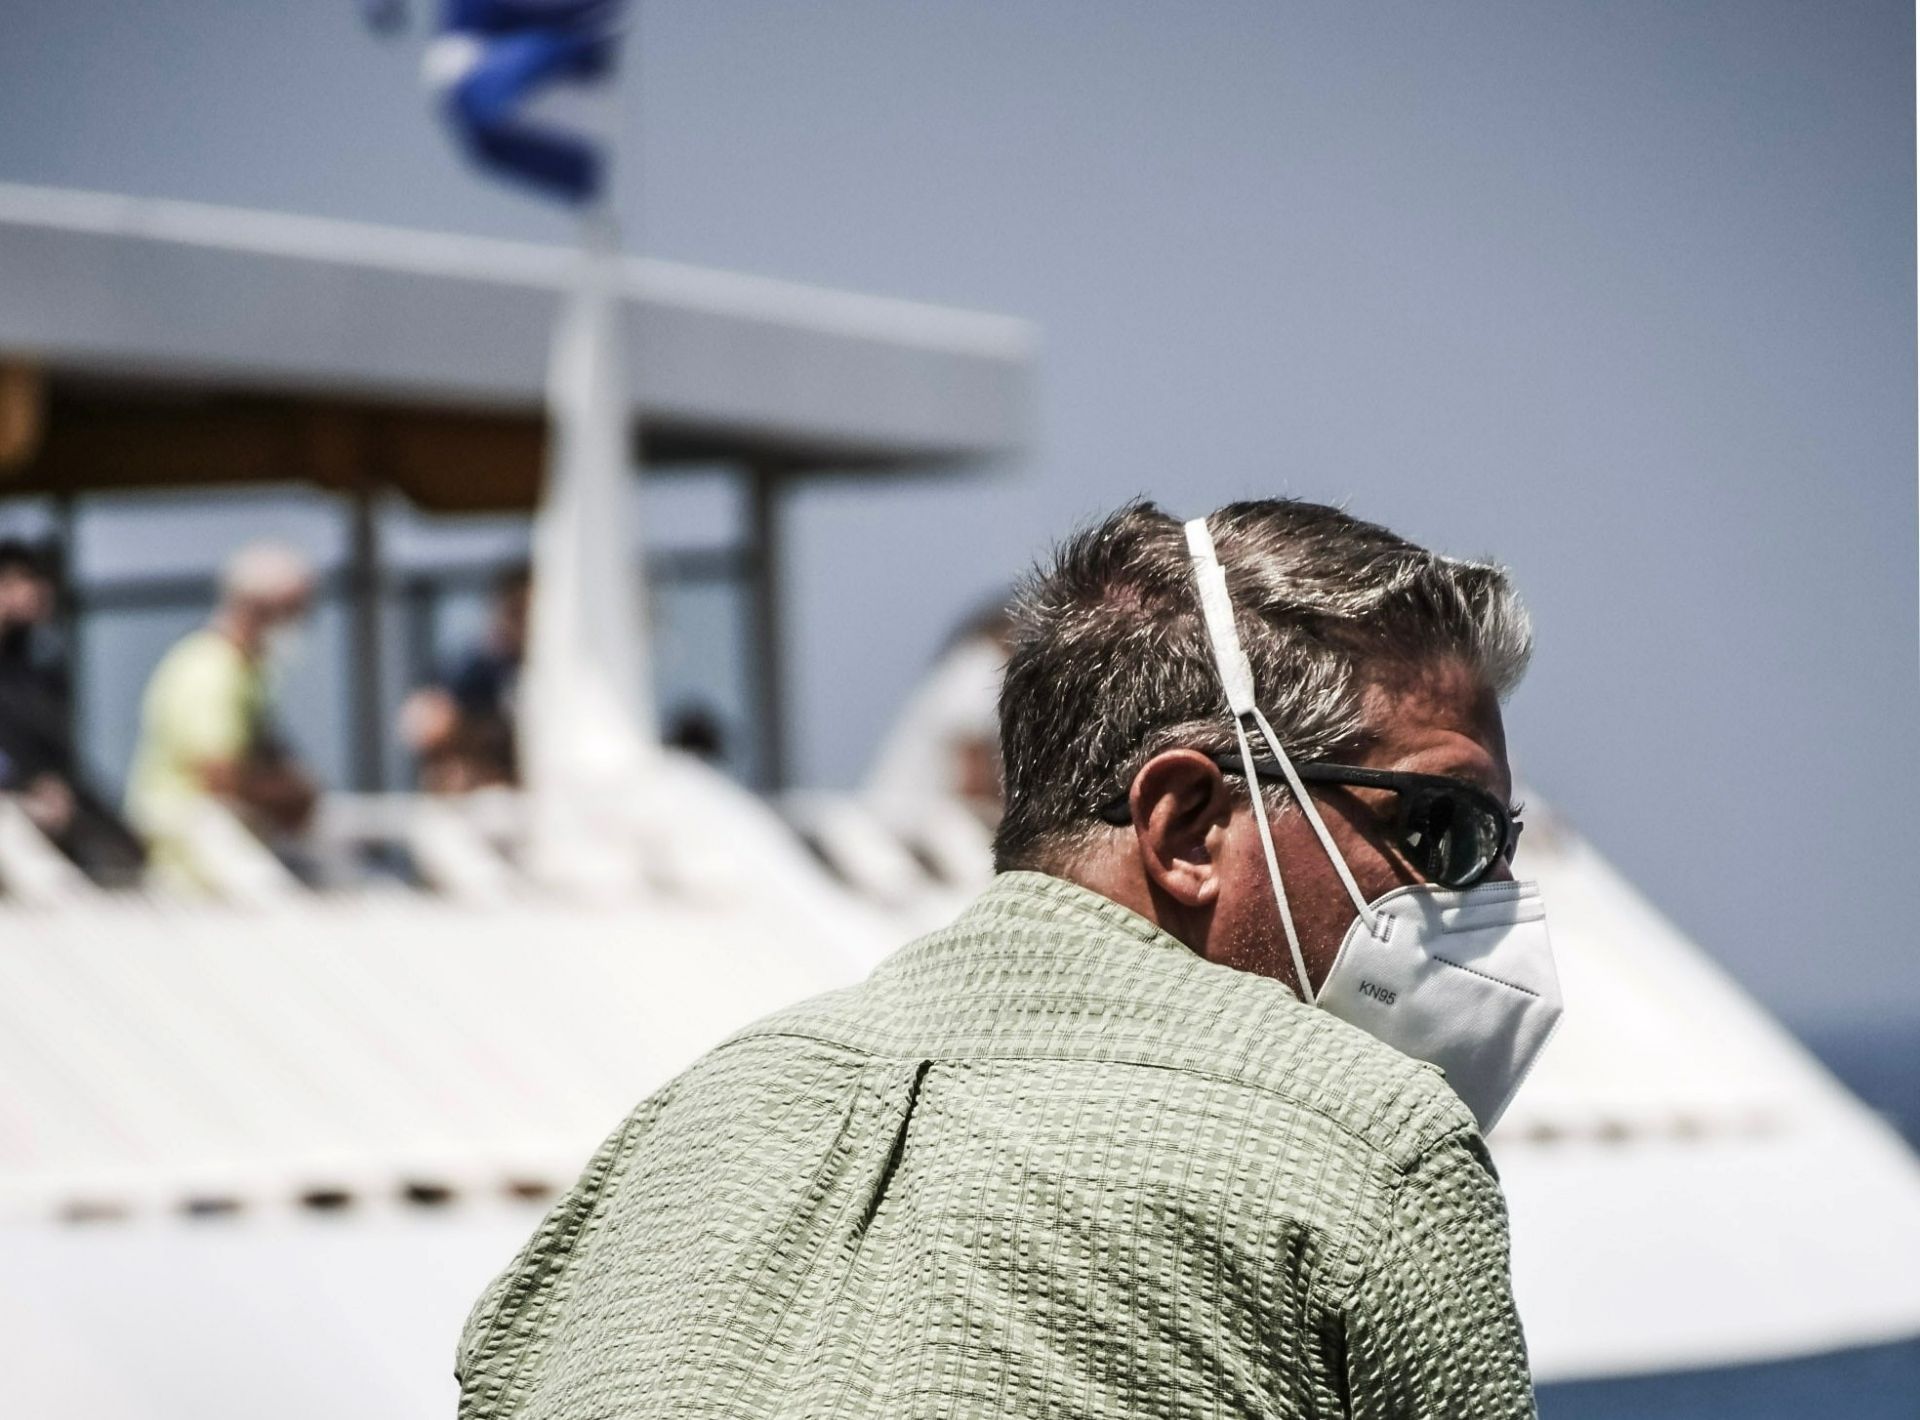 Grecia renunţă la restricţiile COVID-19 pe durata sezonului turistic estival